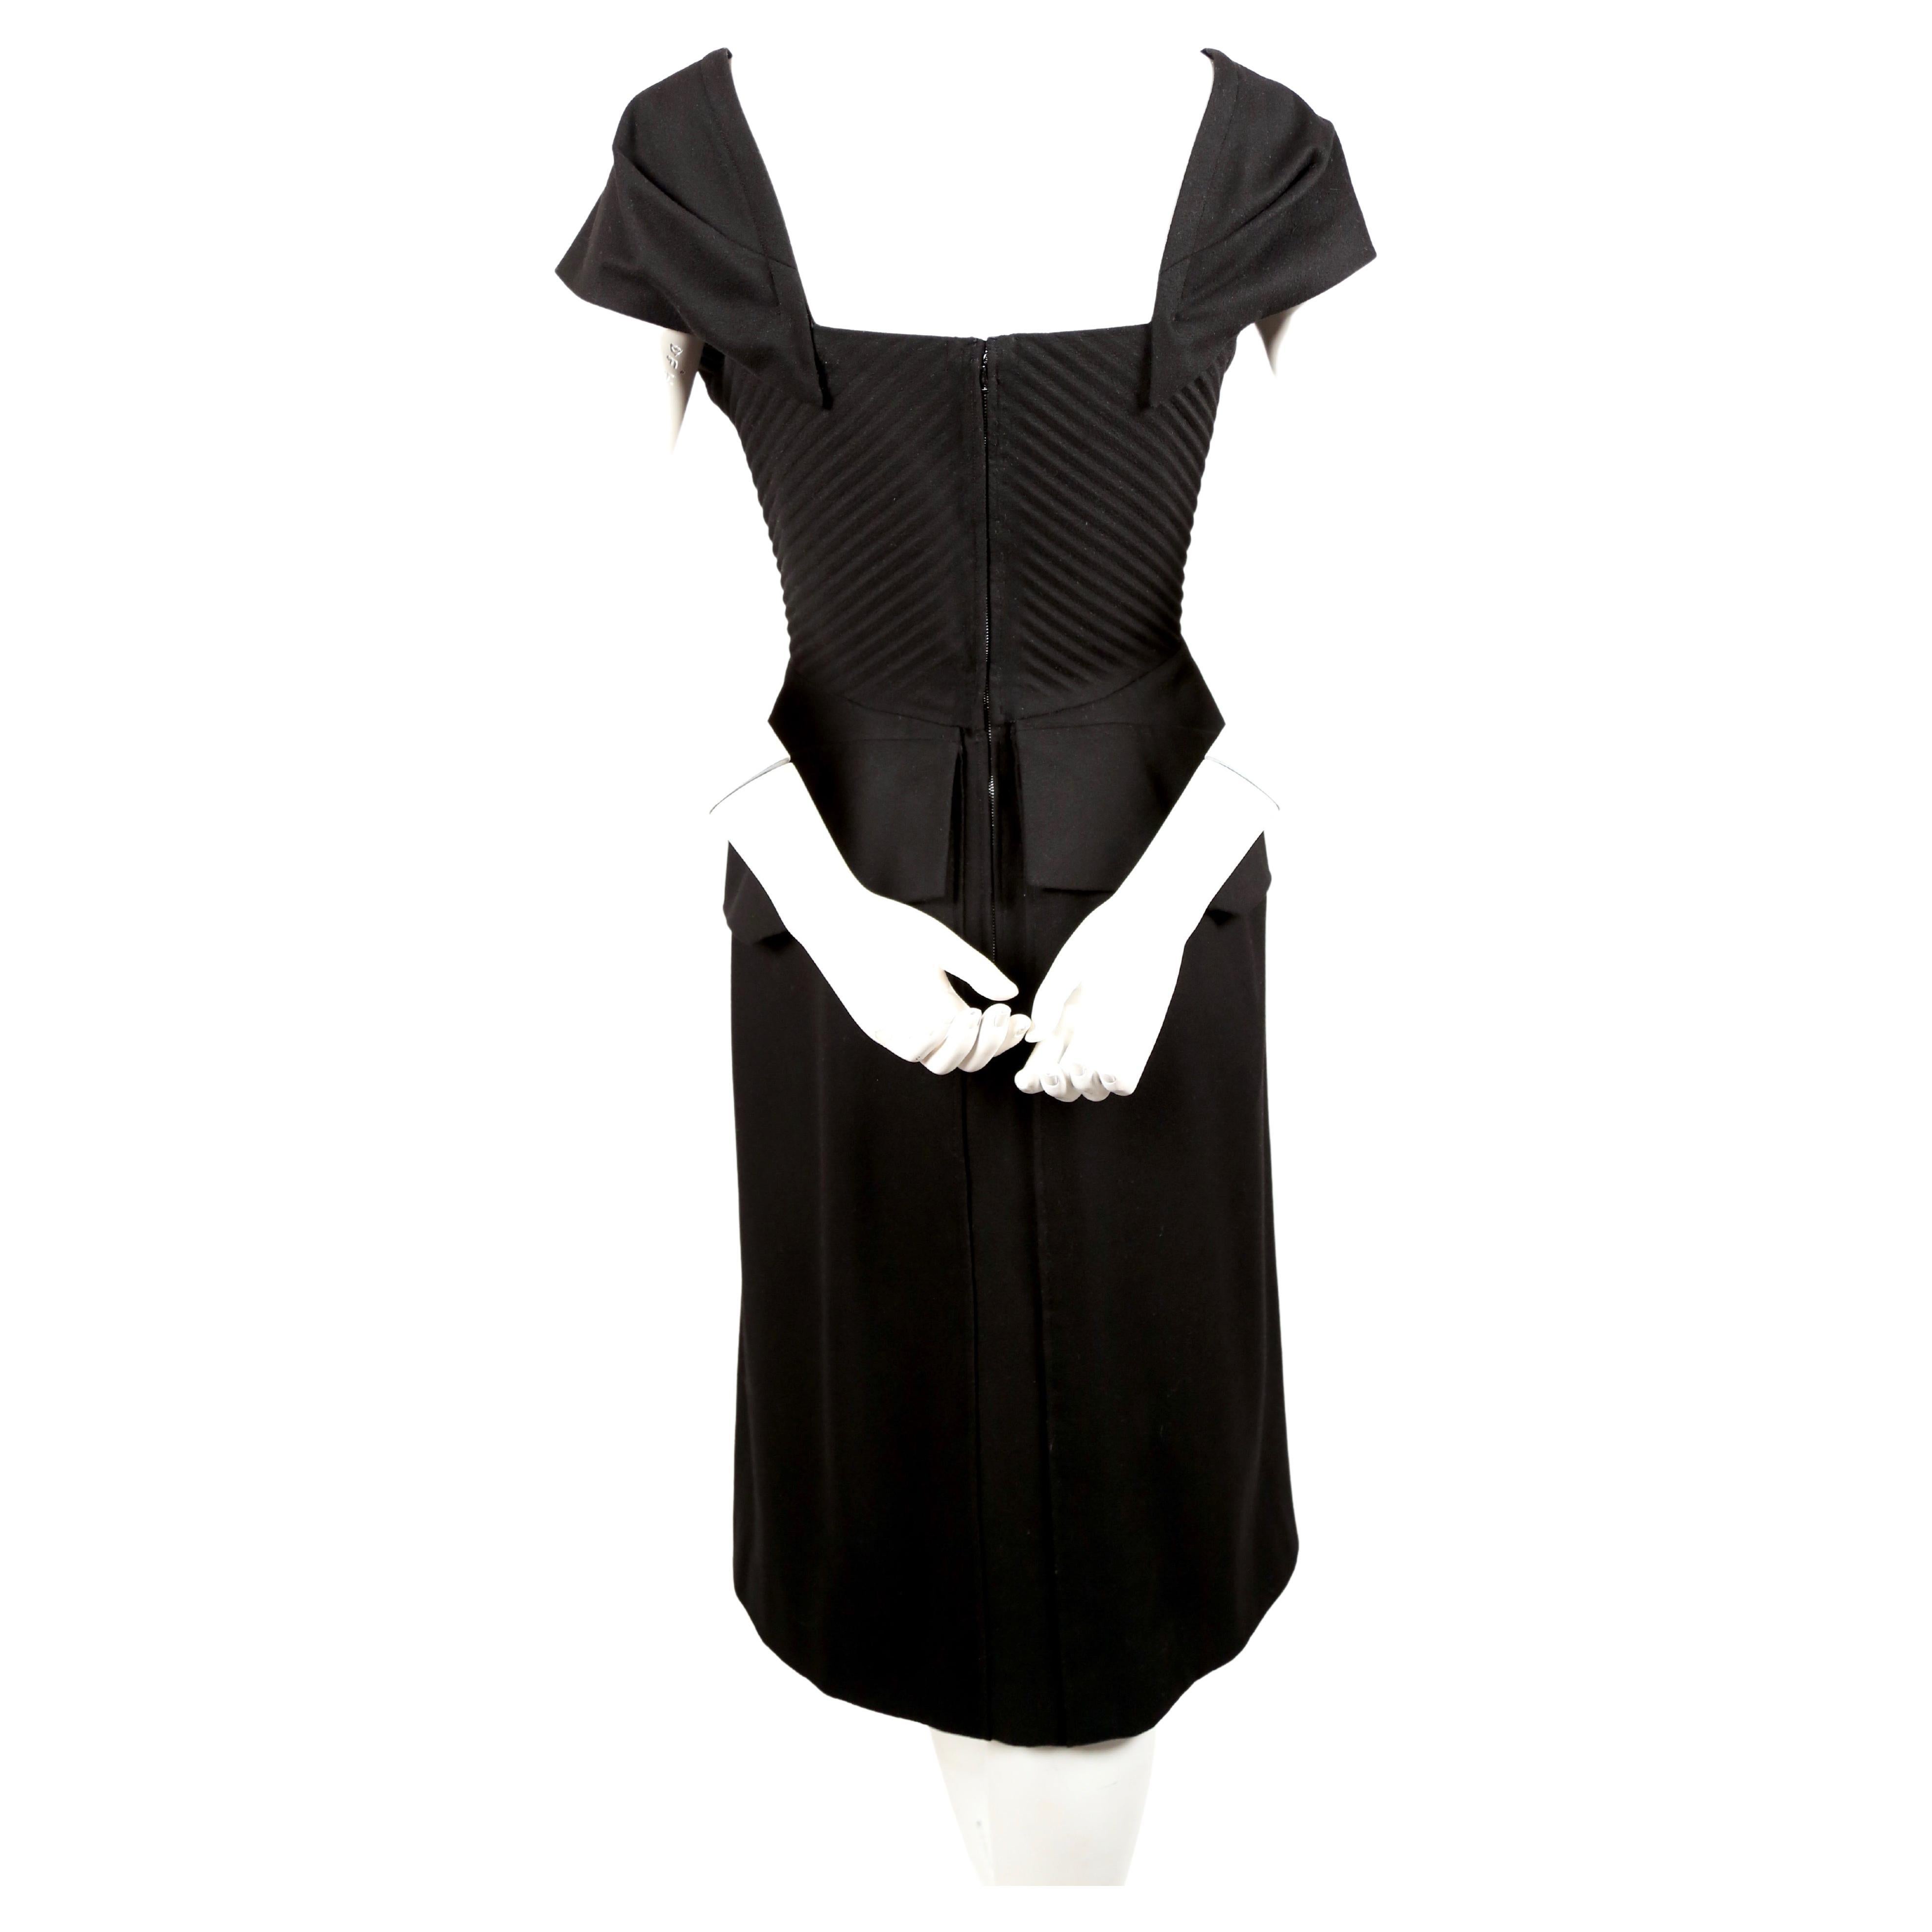 Robe haute couture en laine noire de jais avec corsage plissé, épaules embellies et taille péplum, créée par la maison Worth dans les années 1940. Convient le mieux à une taille de 4 à 6. Mesures approximatives : buste 34